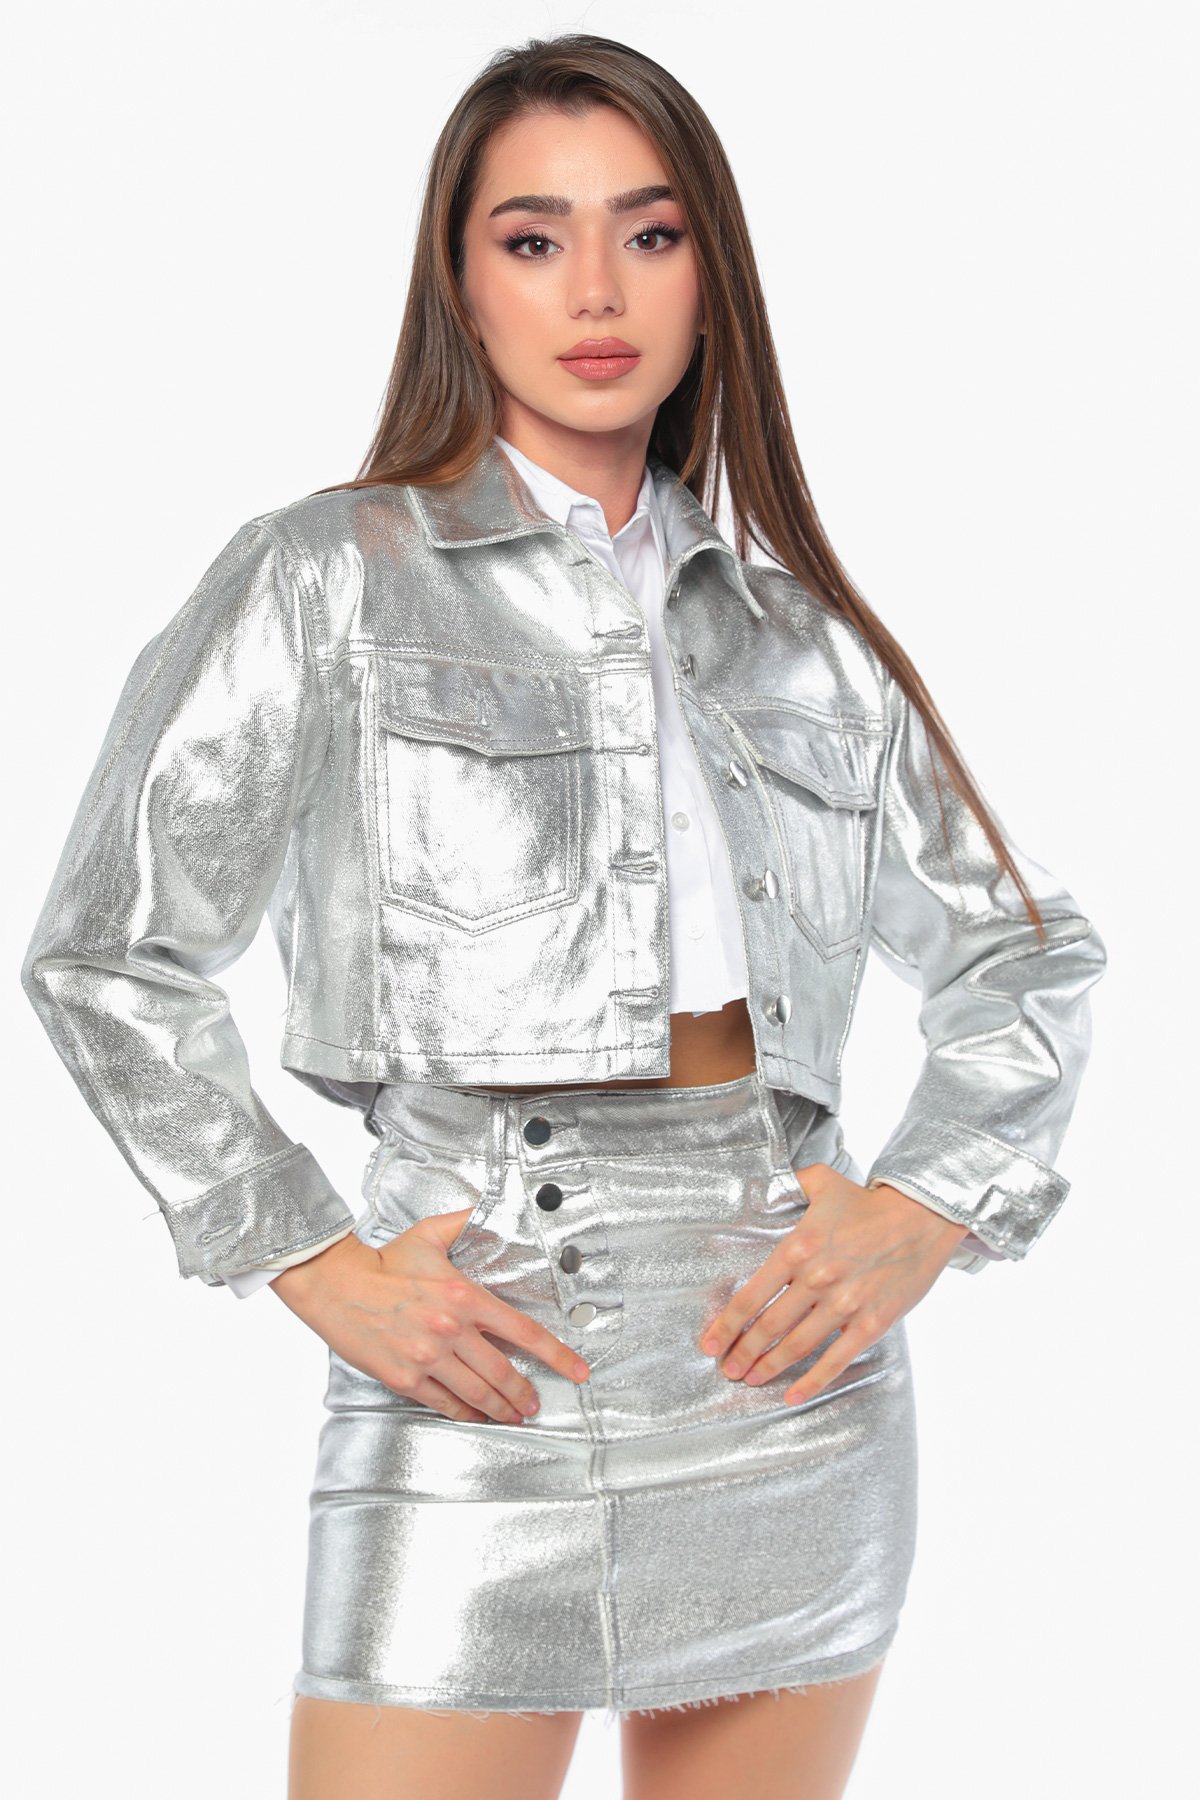 Gümüş Kadın Parlak Crop Top Ceket Etek İkili Takım